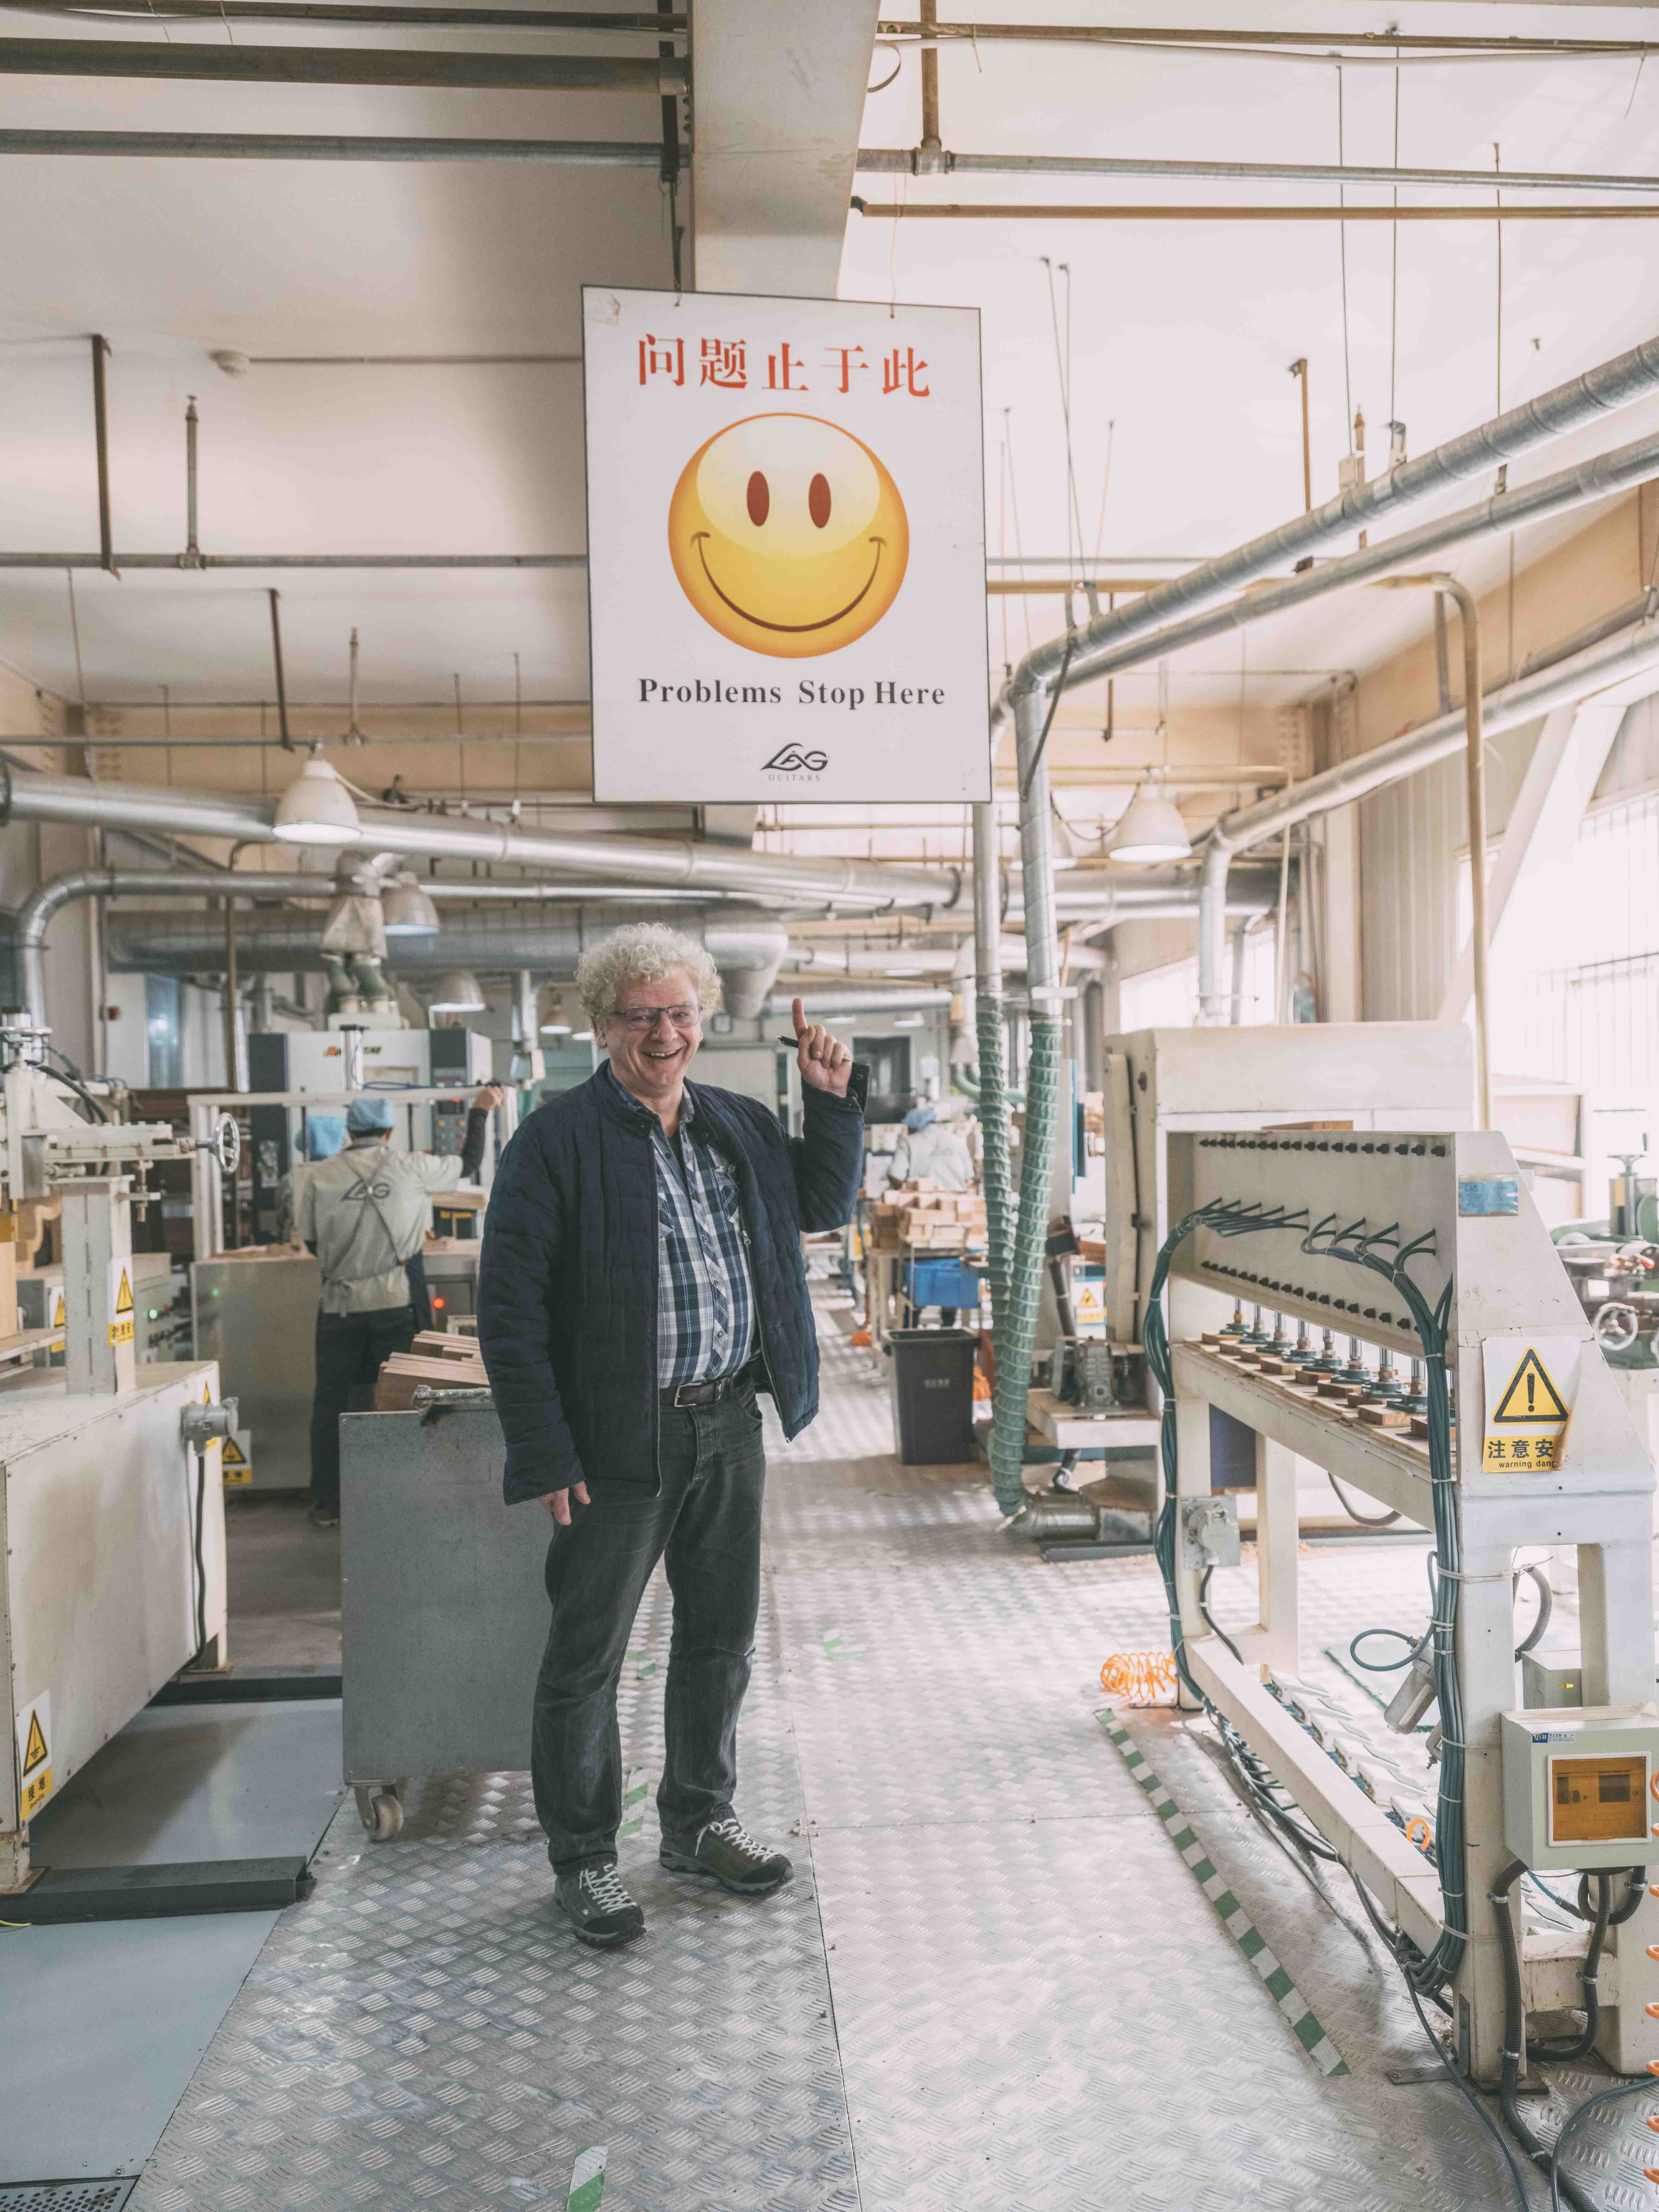 Maurice Dupont, luthier et Meilleur Ouvrier de France, montre un panneau sur lequel est inscrit, sous un Smiley, "Problems Stop Here, Lâg" à l'entrée de la chaîne de production de l'usine Lâg à Tianjin